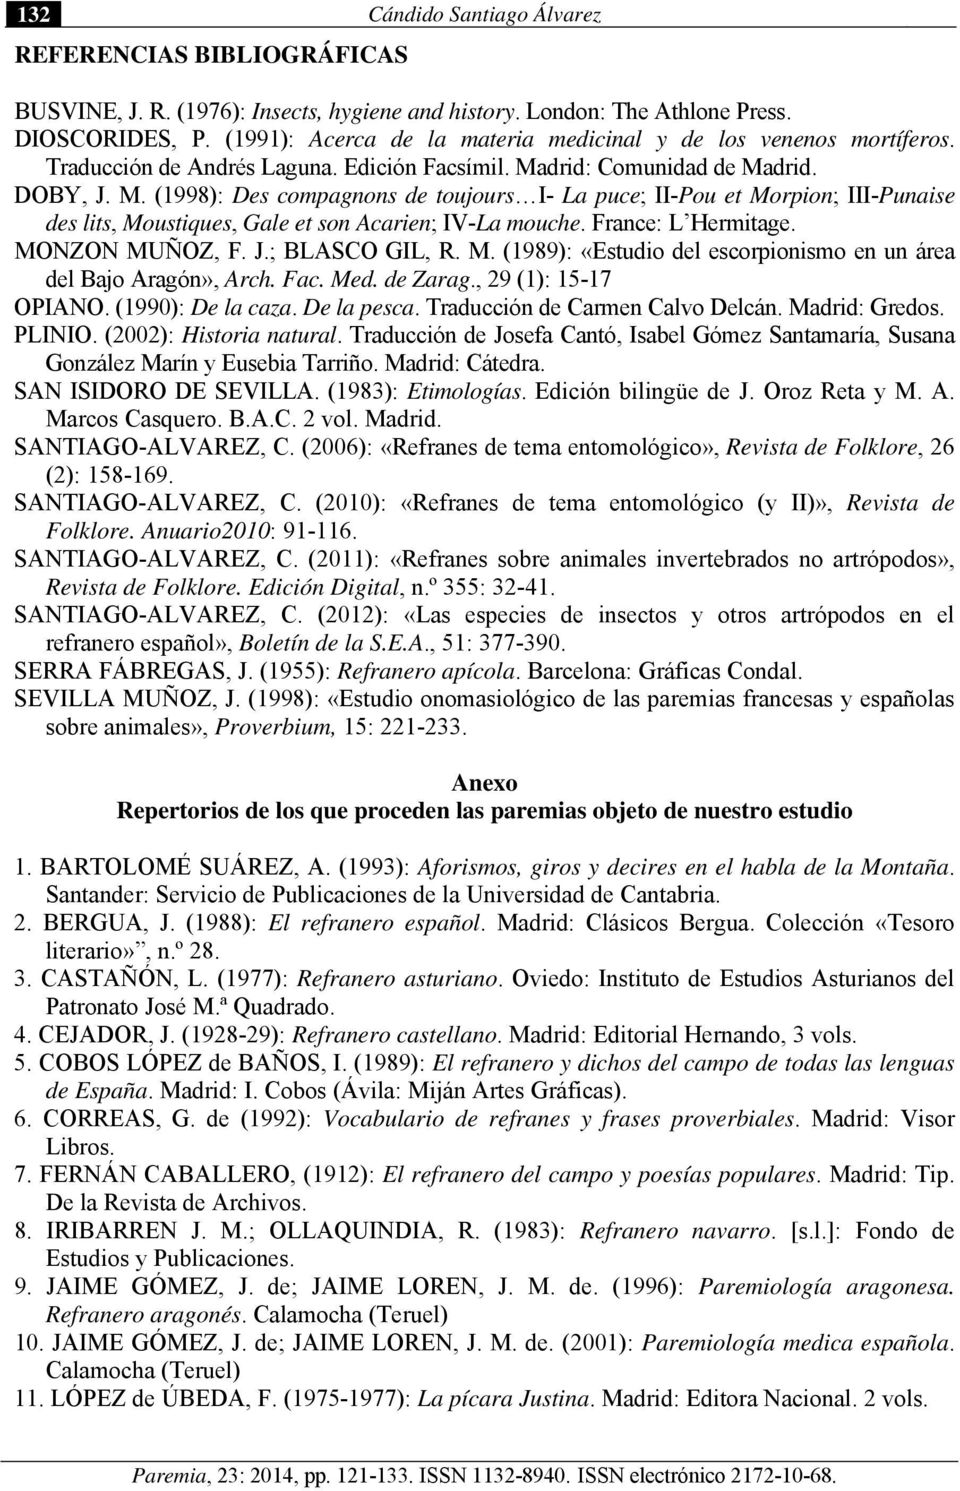 drid: Comunidad de Madrid. DOBY, J. M. (1998): Des compagnons de toujours I- La puce; II-Pou et Morpion; III-Punaise des lits, Moustiques, Gale et son Acarien; IV-La mouche. France: L Hermitage.